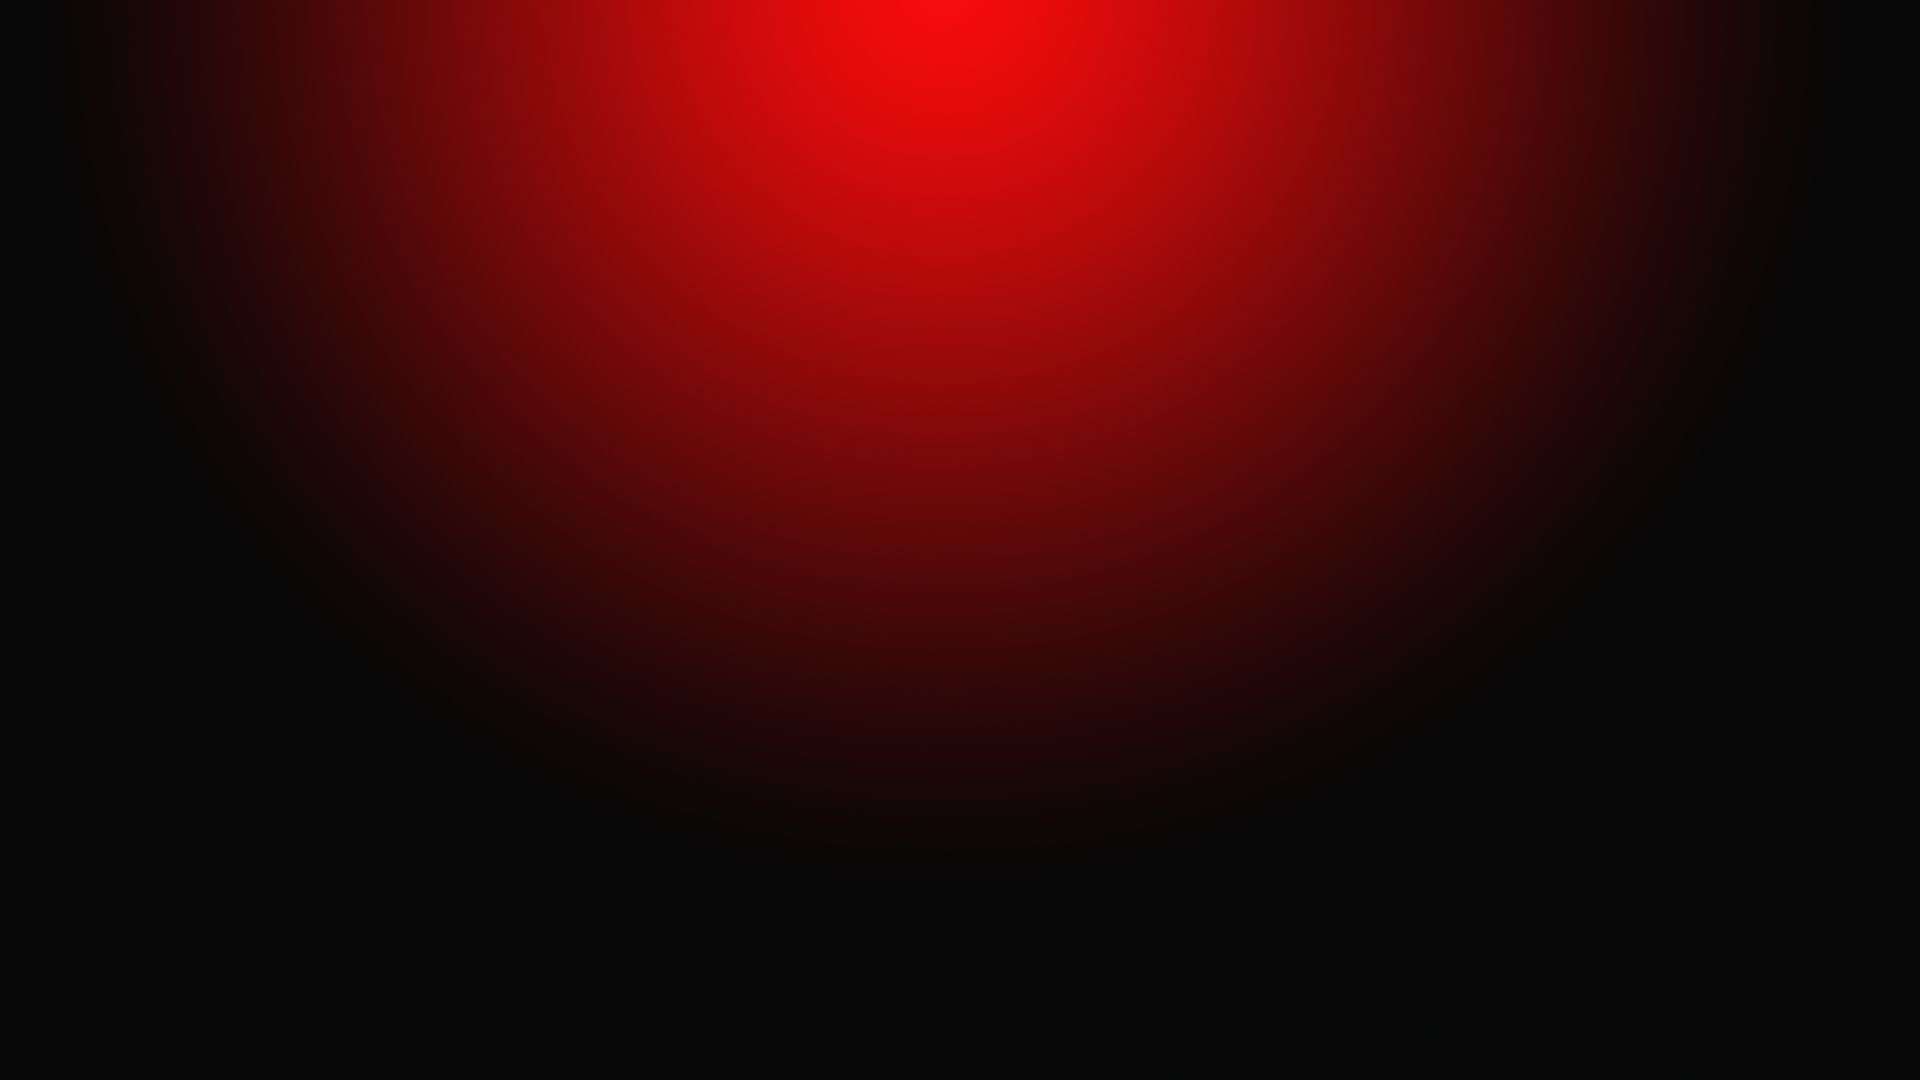 19201080 Red and Black Gradient Circular Horizontal